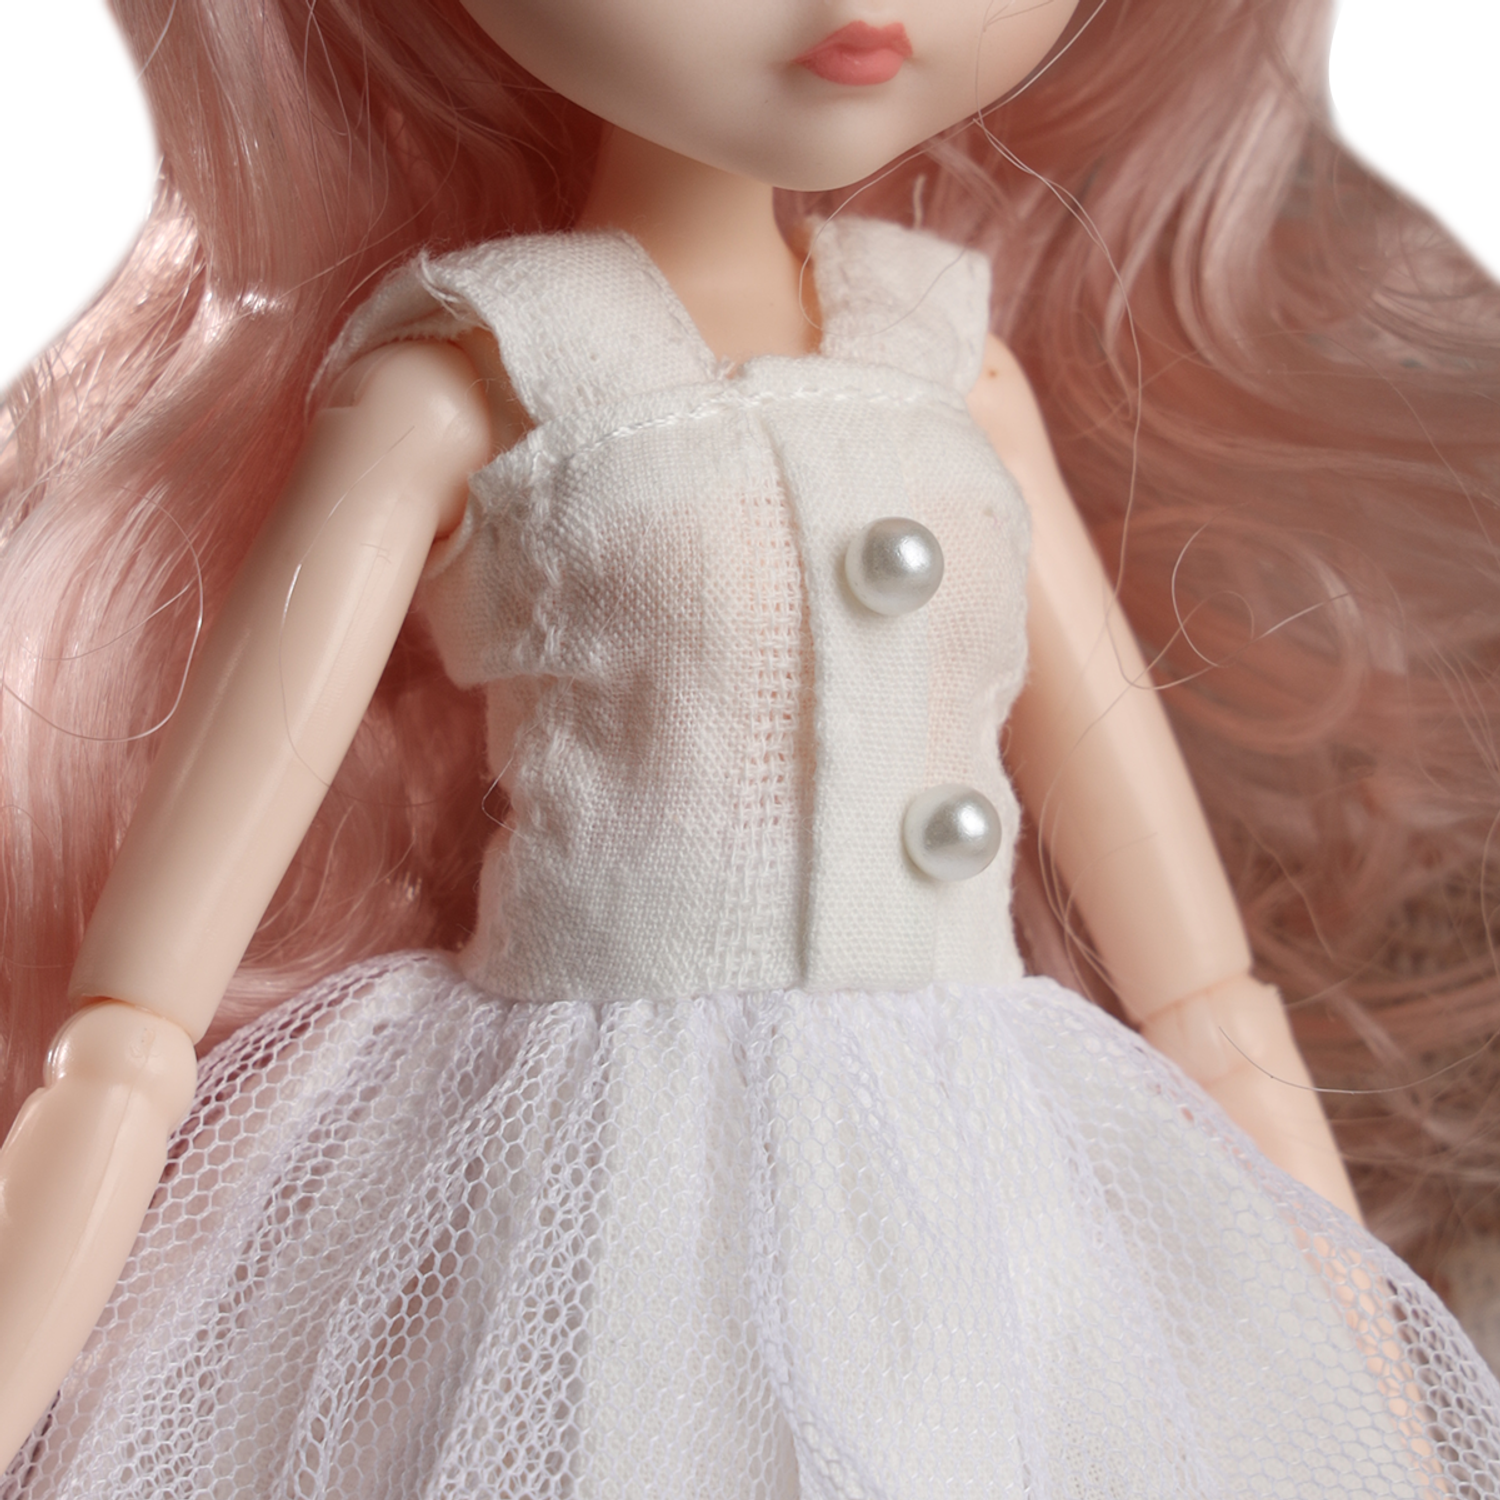 Коллекционная шарнирная кукла WiMI Шарнирная кукла аниме коллекционная бжд интерьерная с аксессуарами для девочки 26 см 1730000013 - фото 2